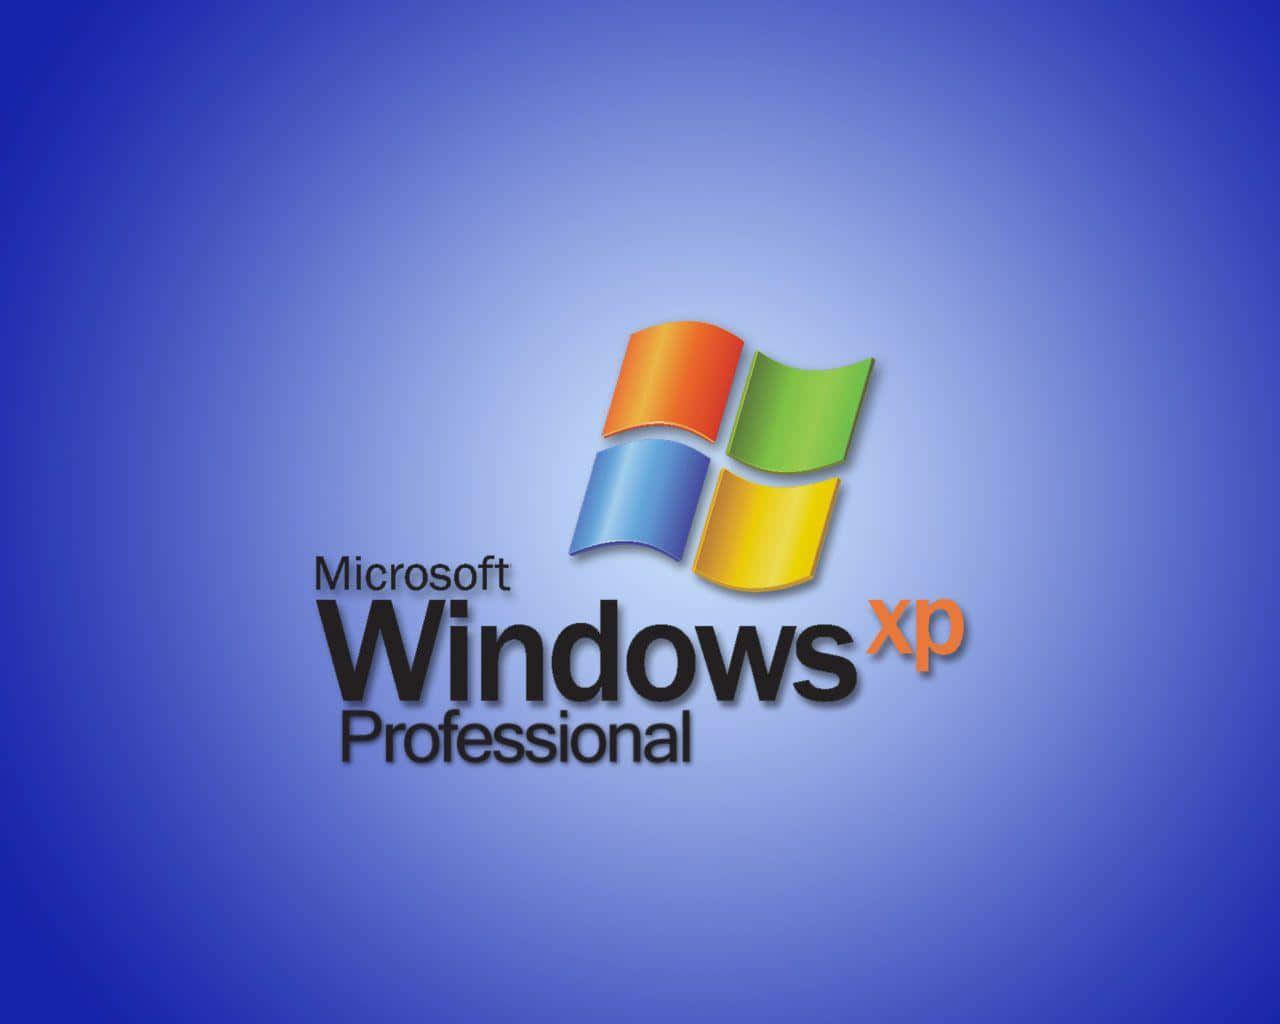 Fåadgang Til Windows Xp's Uendelige Muligheder.